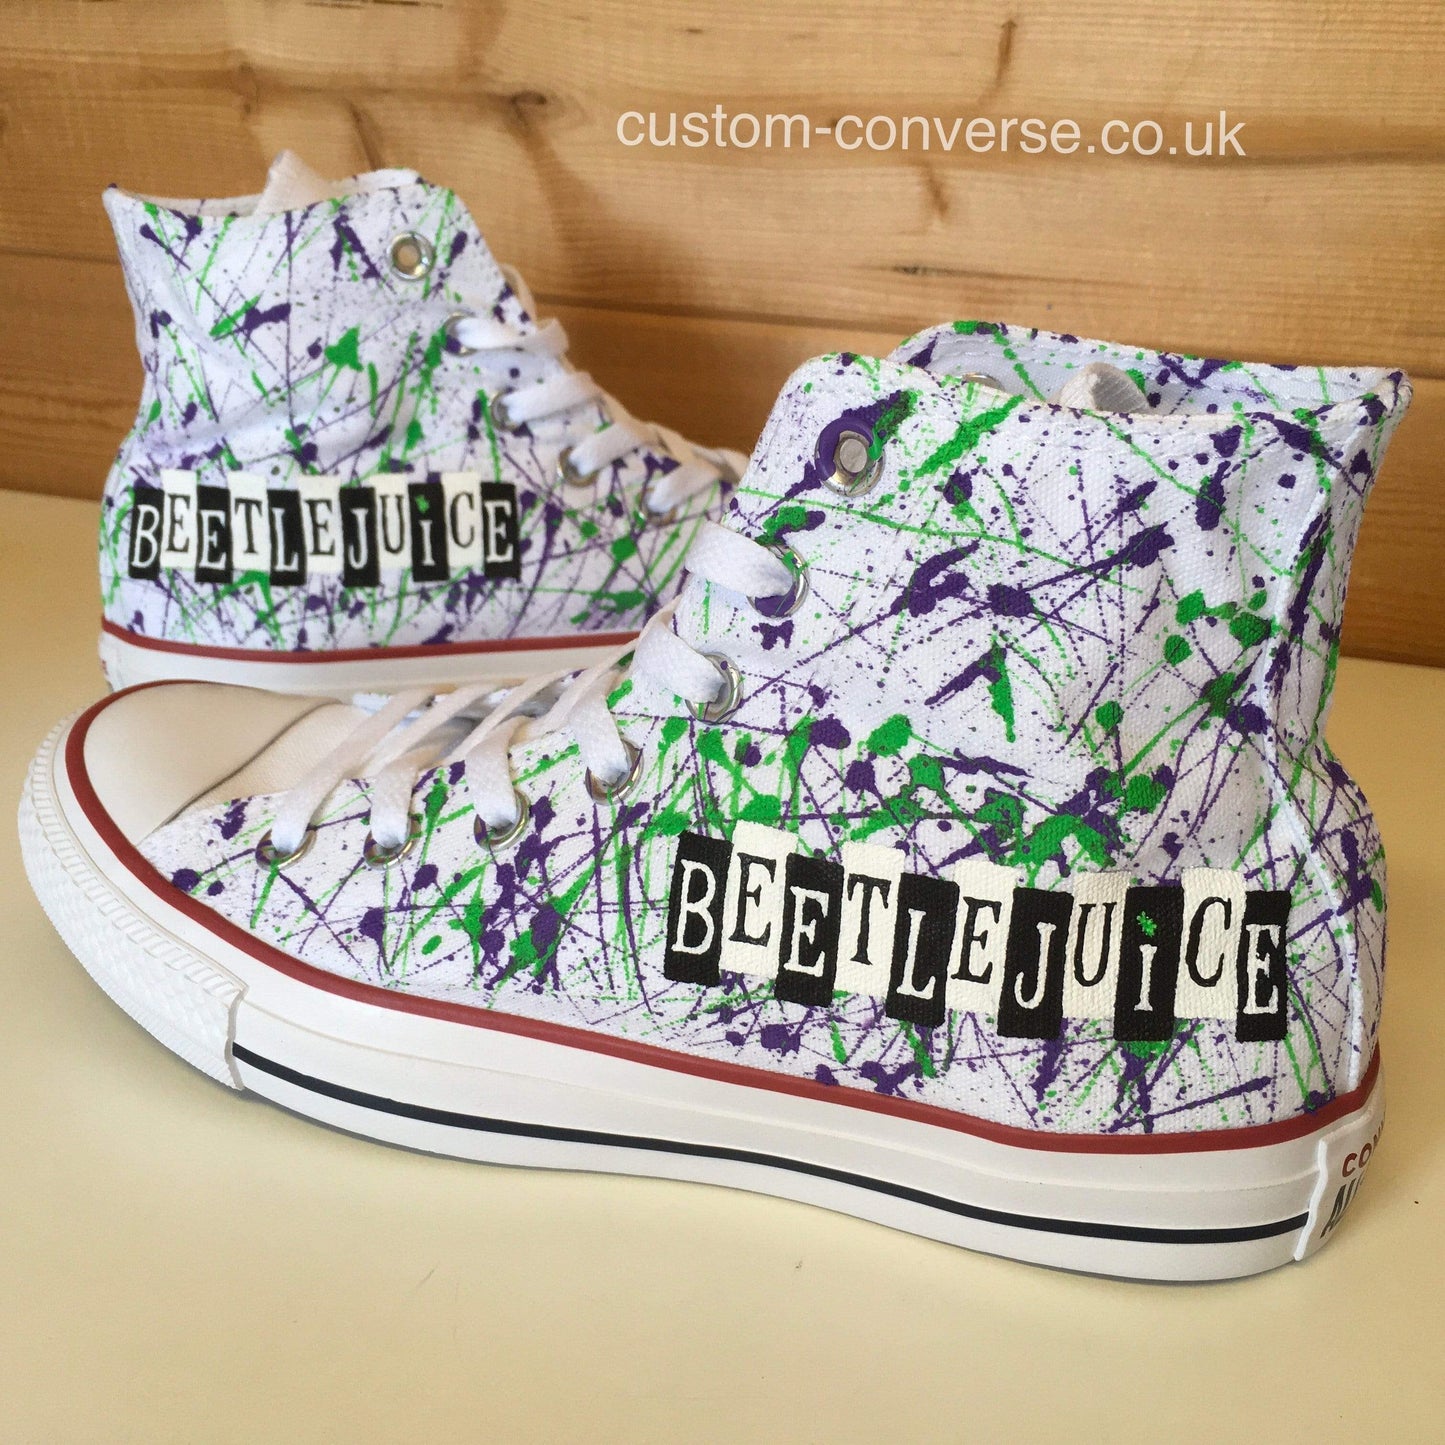 Beetlejuice - Custom Converse Ltd.